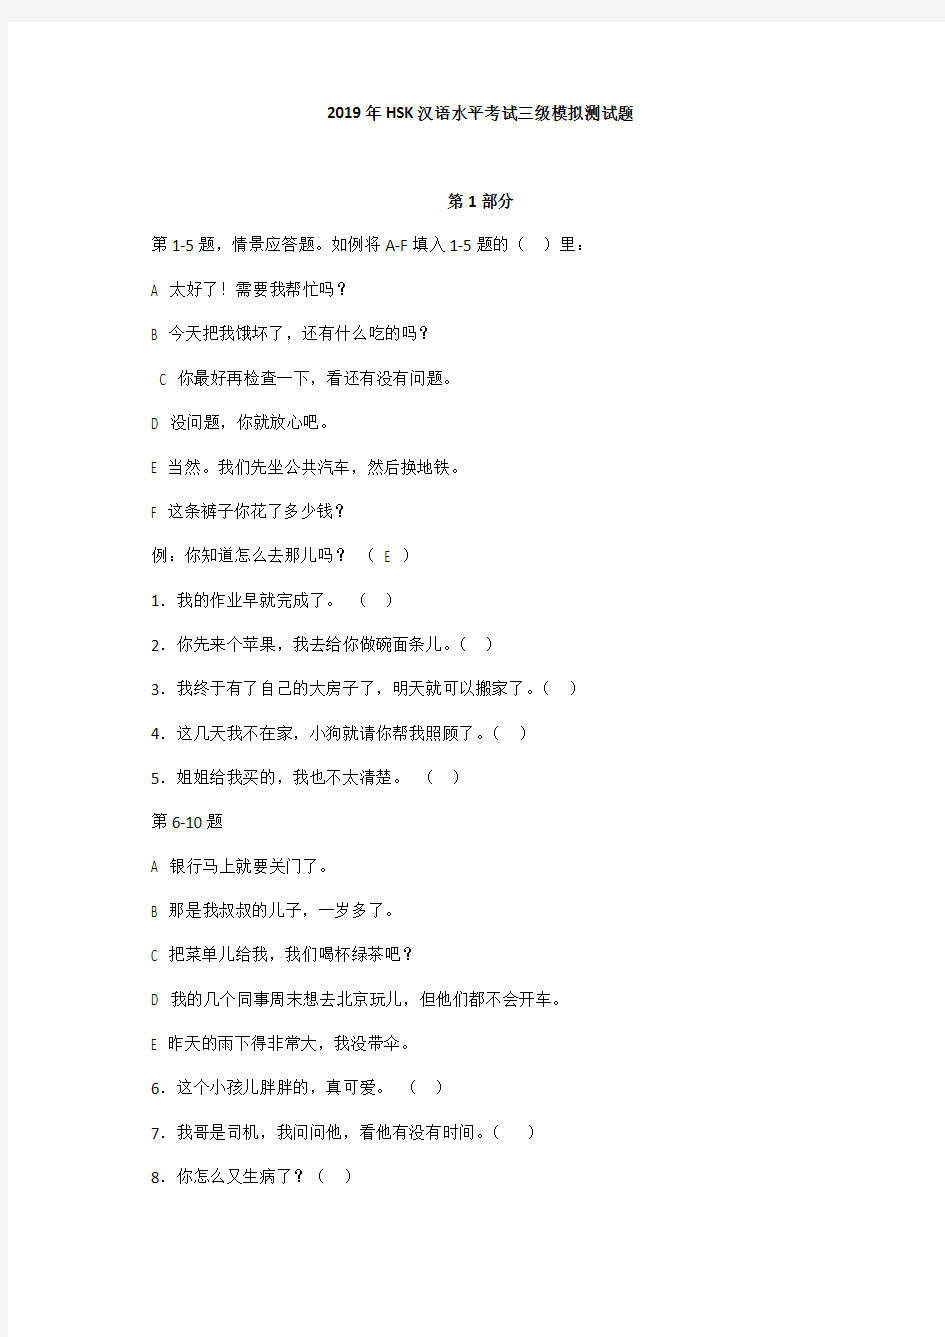 (完整版)2019年HSK汉语水平考试三级模拟测试题